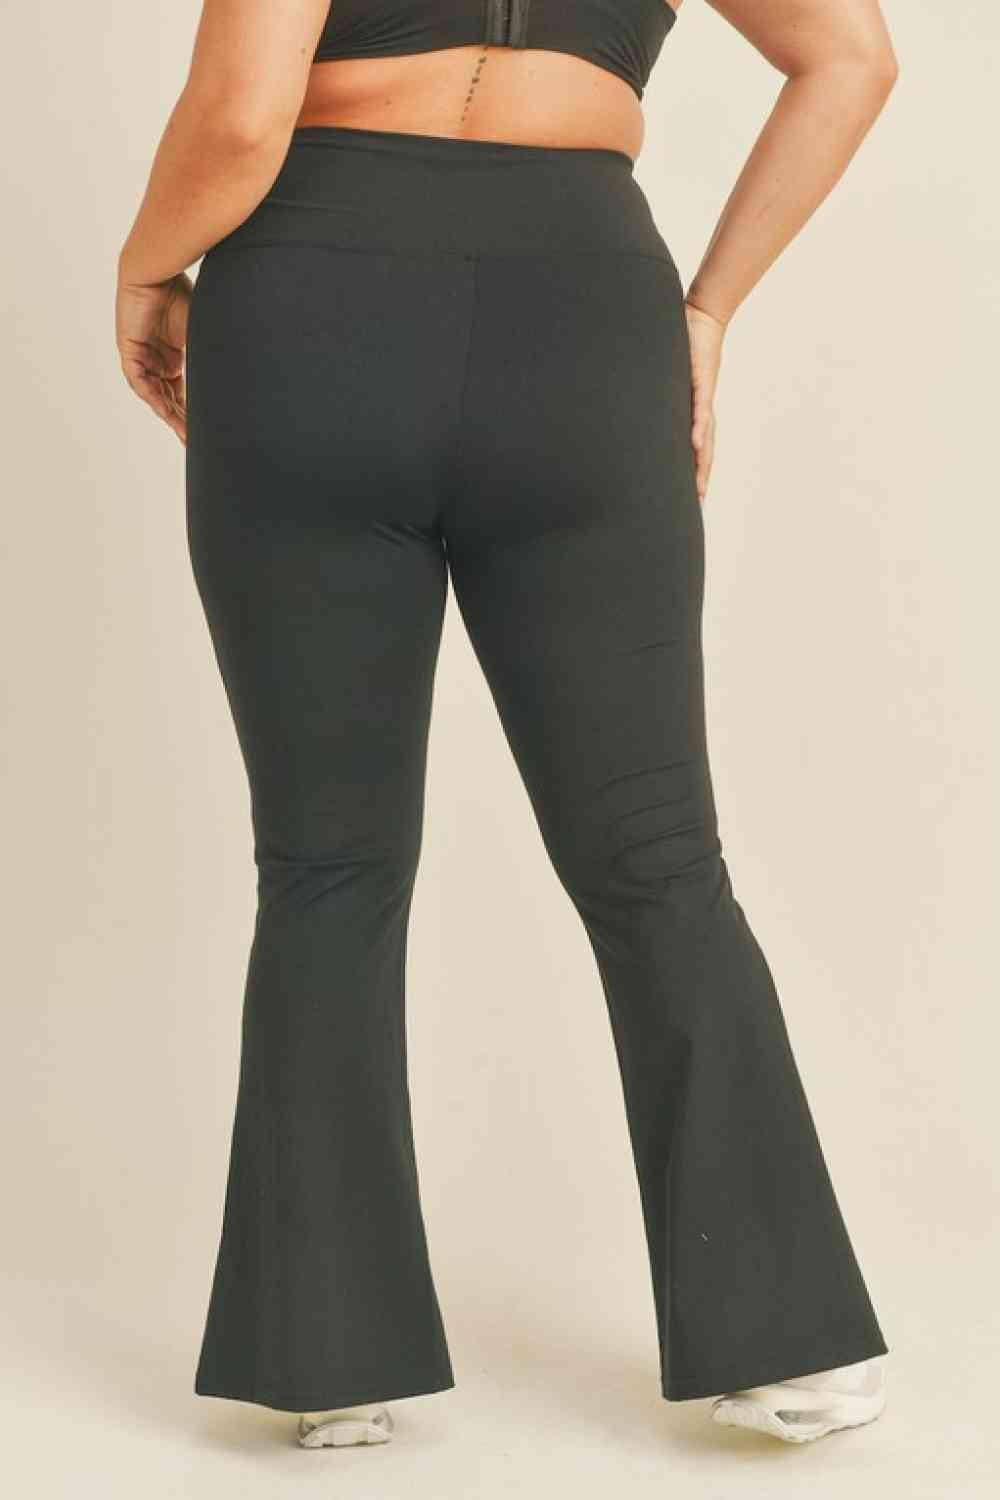 Kimberly C Full Size Slit Flare Leg Pants in Black - Immenzive